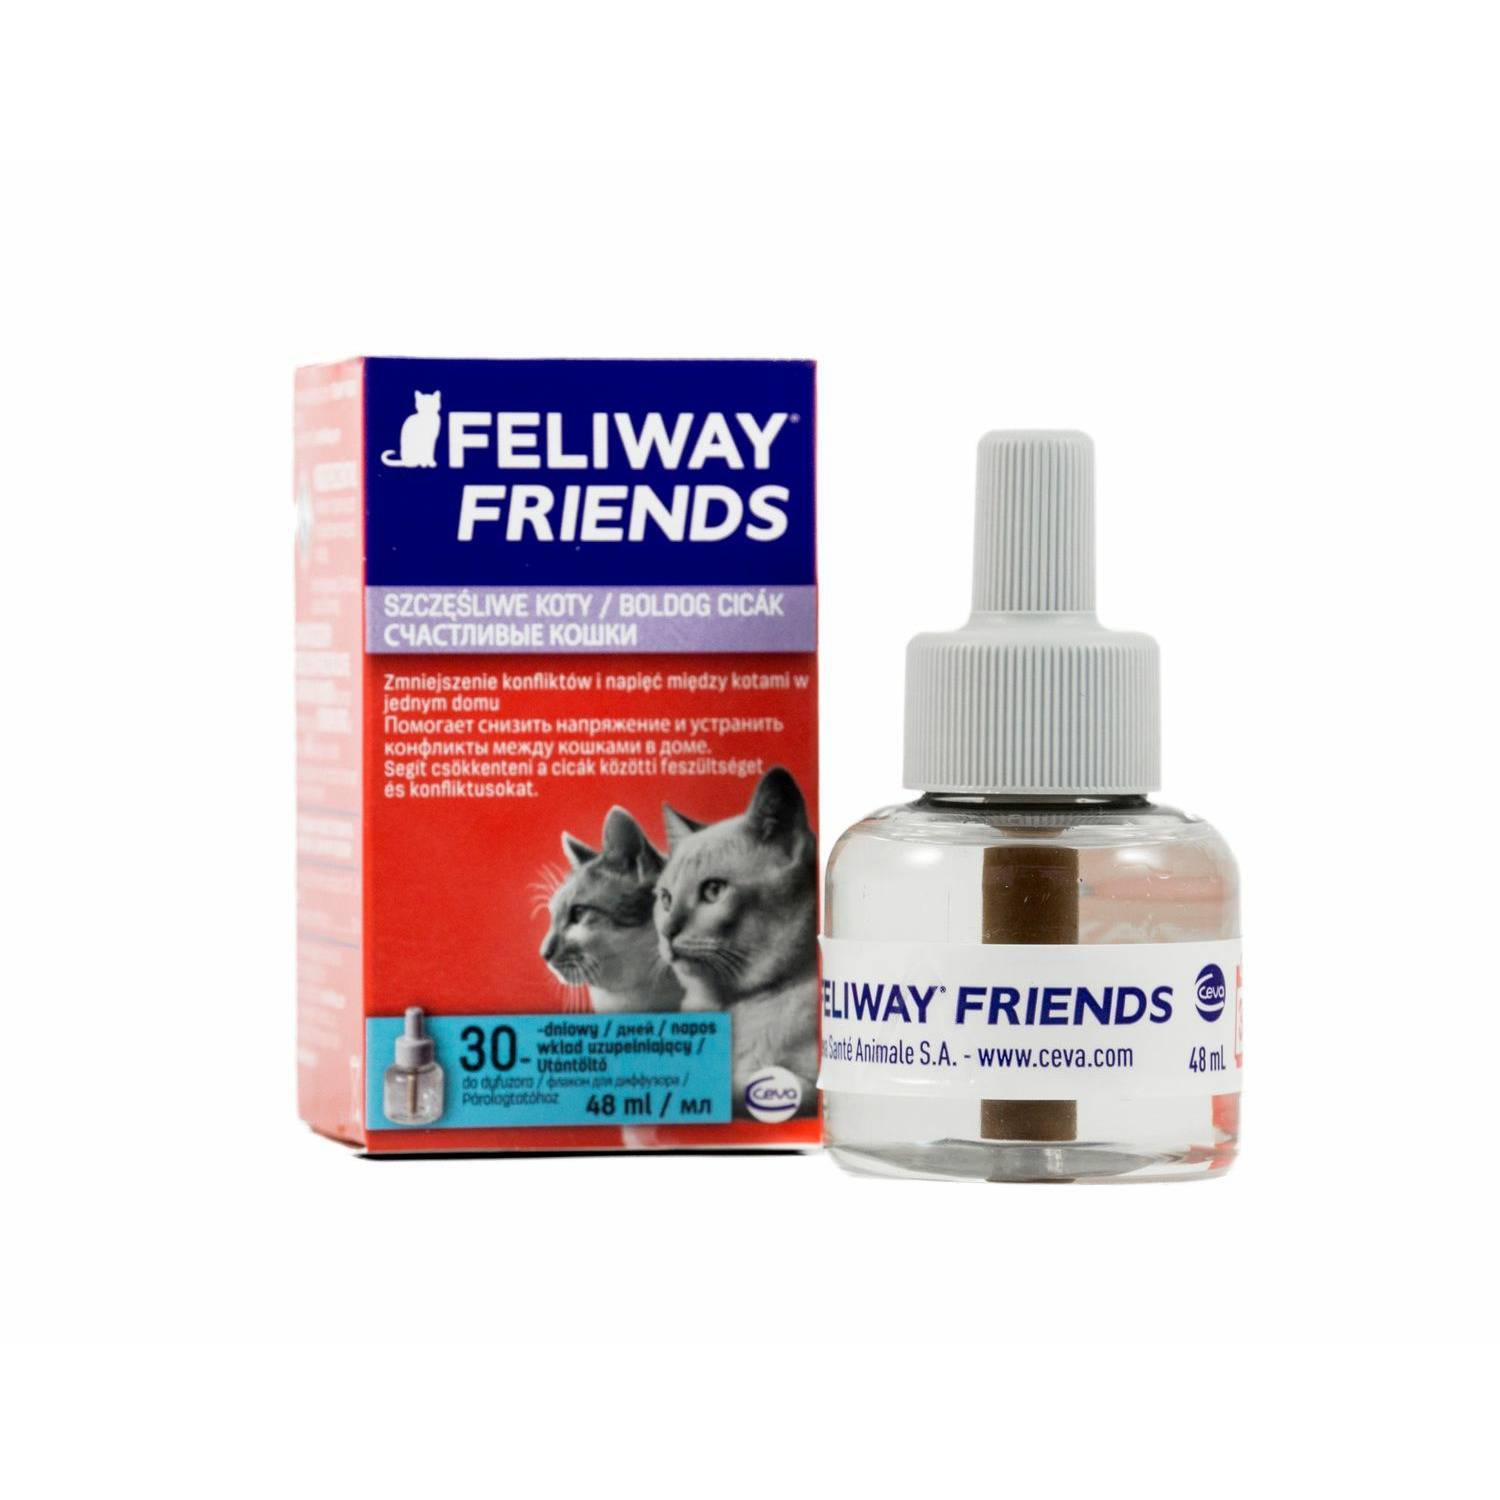 Феливей (feliway) — средство для коррекции поведения кошек в домашних условиях, правила применения, отзывы